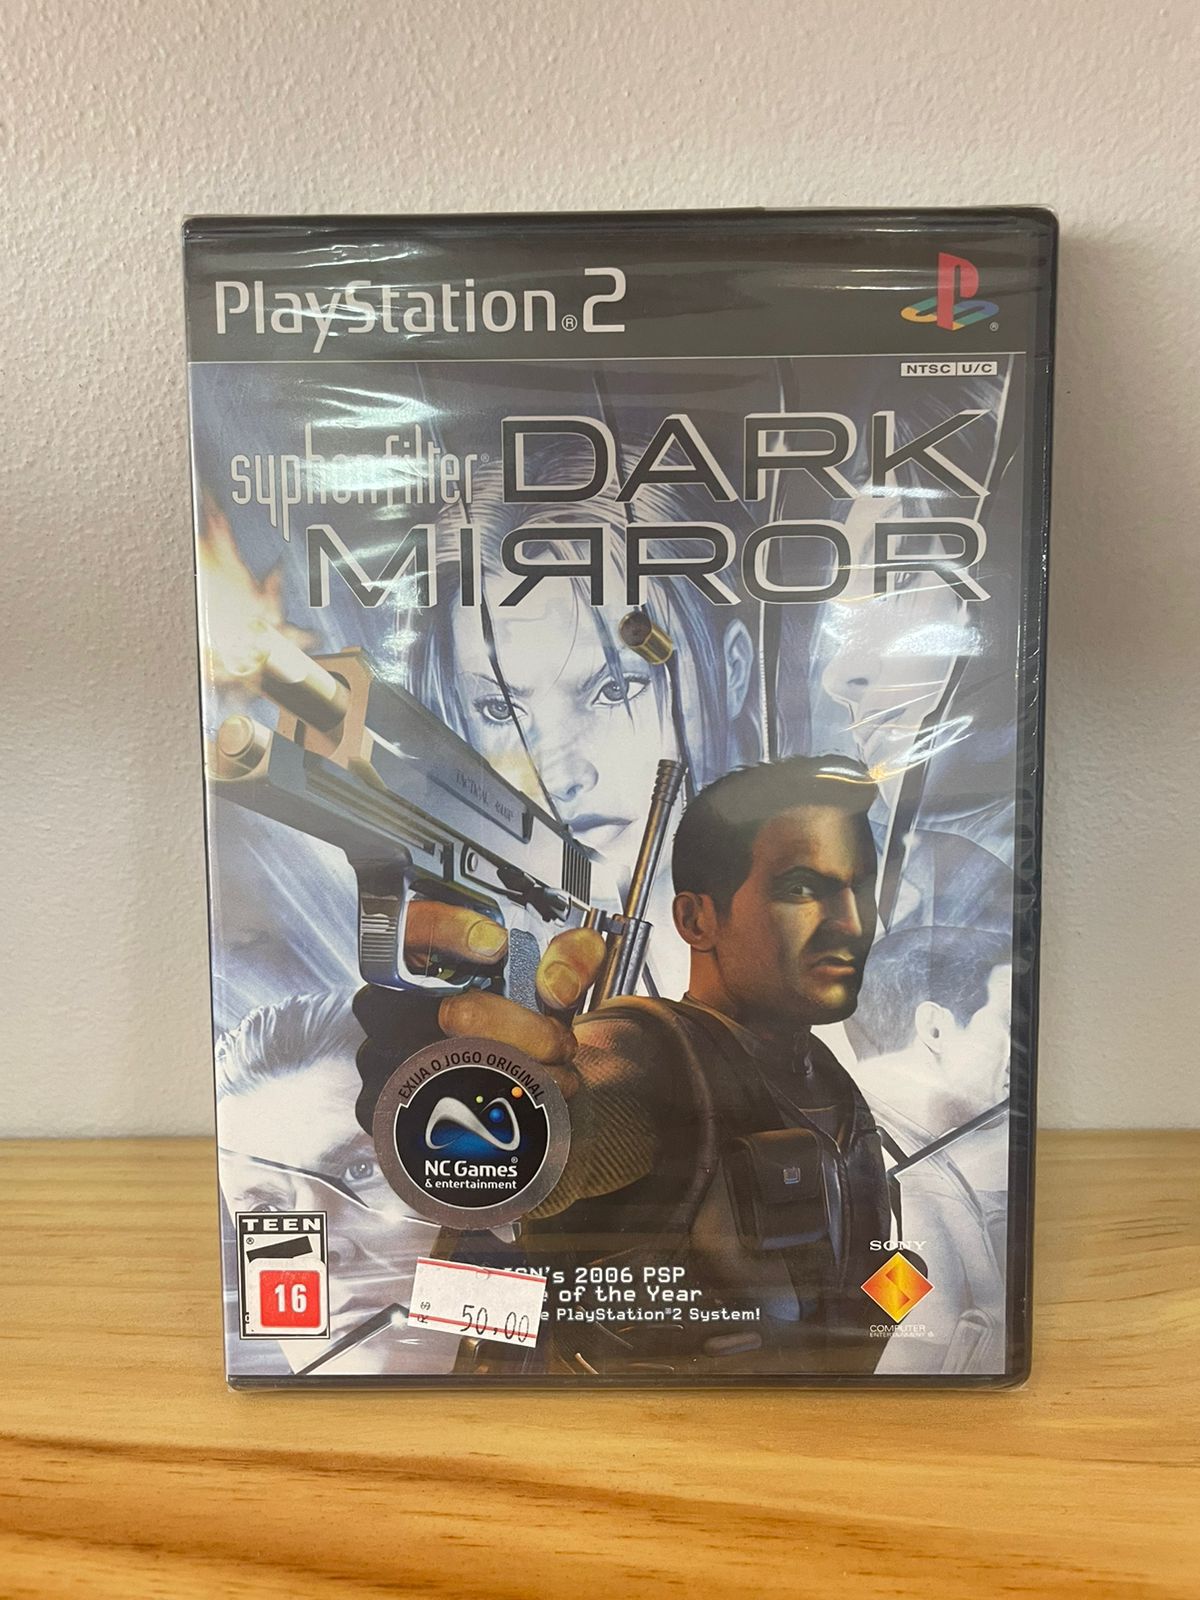 Jogo Syphon Filter: Dark Mirror - PS2 (Lacrado) - Comprar Jogos